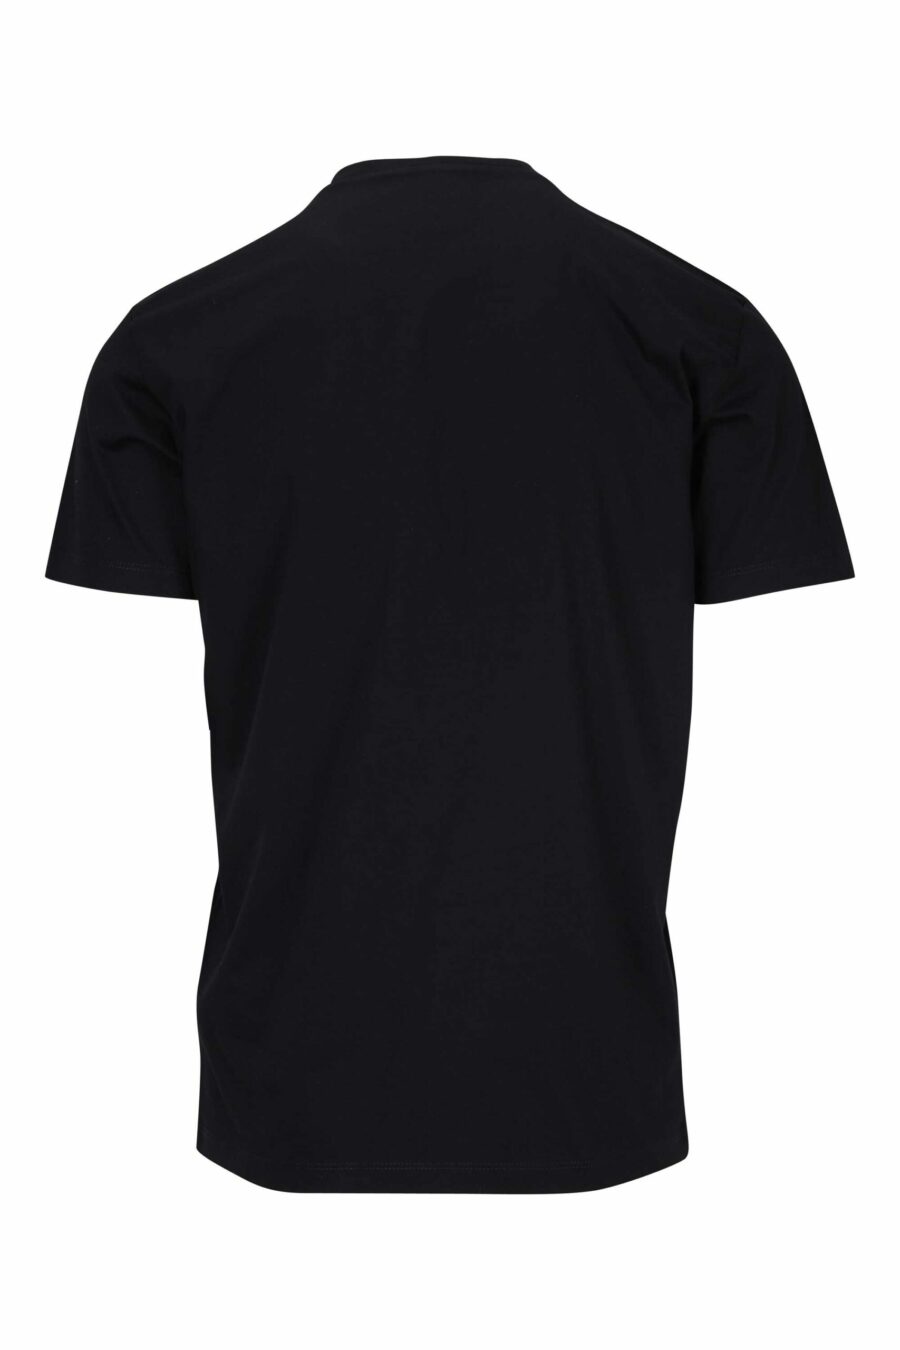 Camiseta negra con logo "icon" doblado - 8054148400989 1 scaled